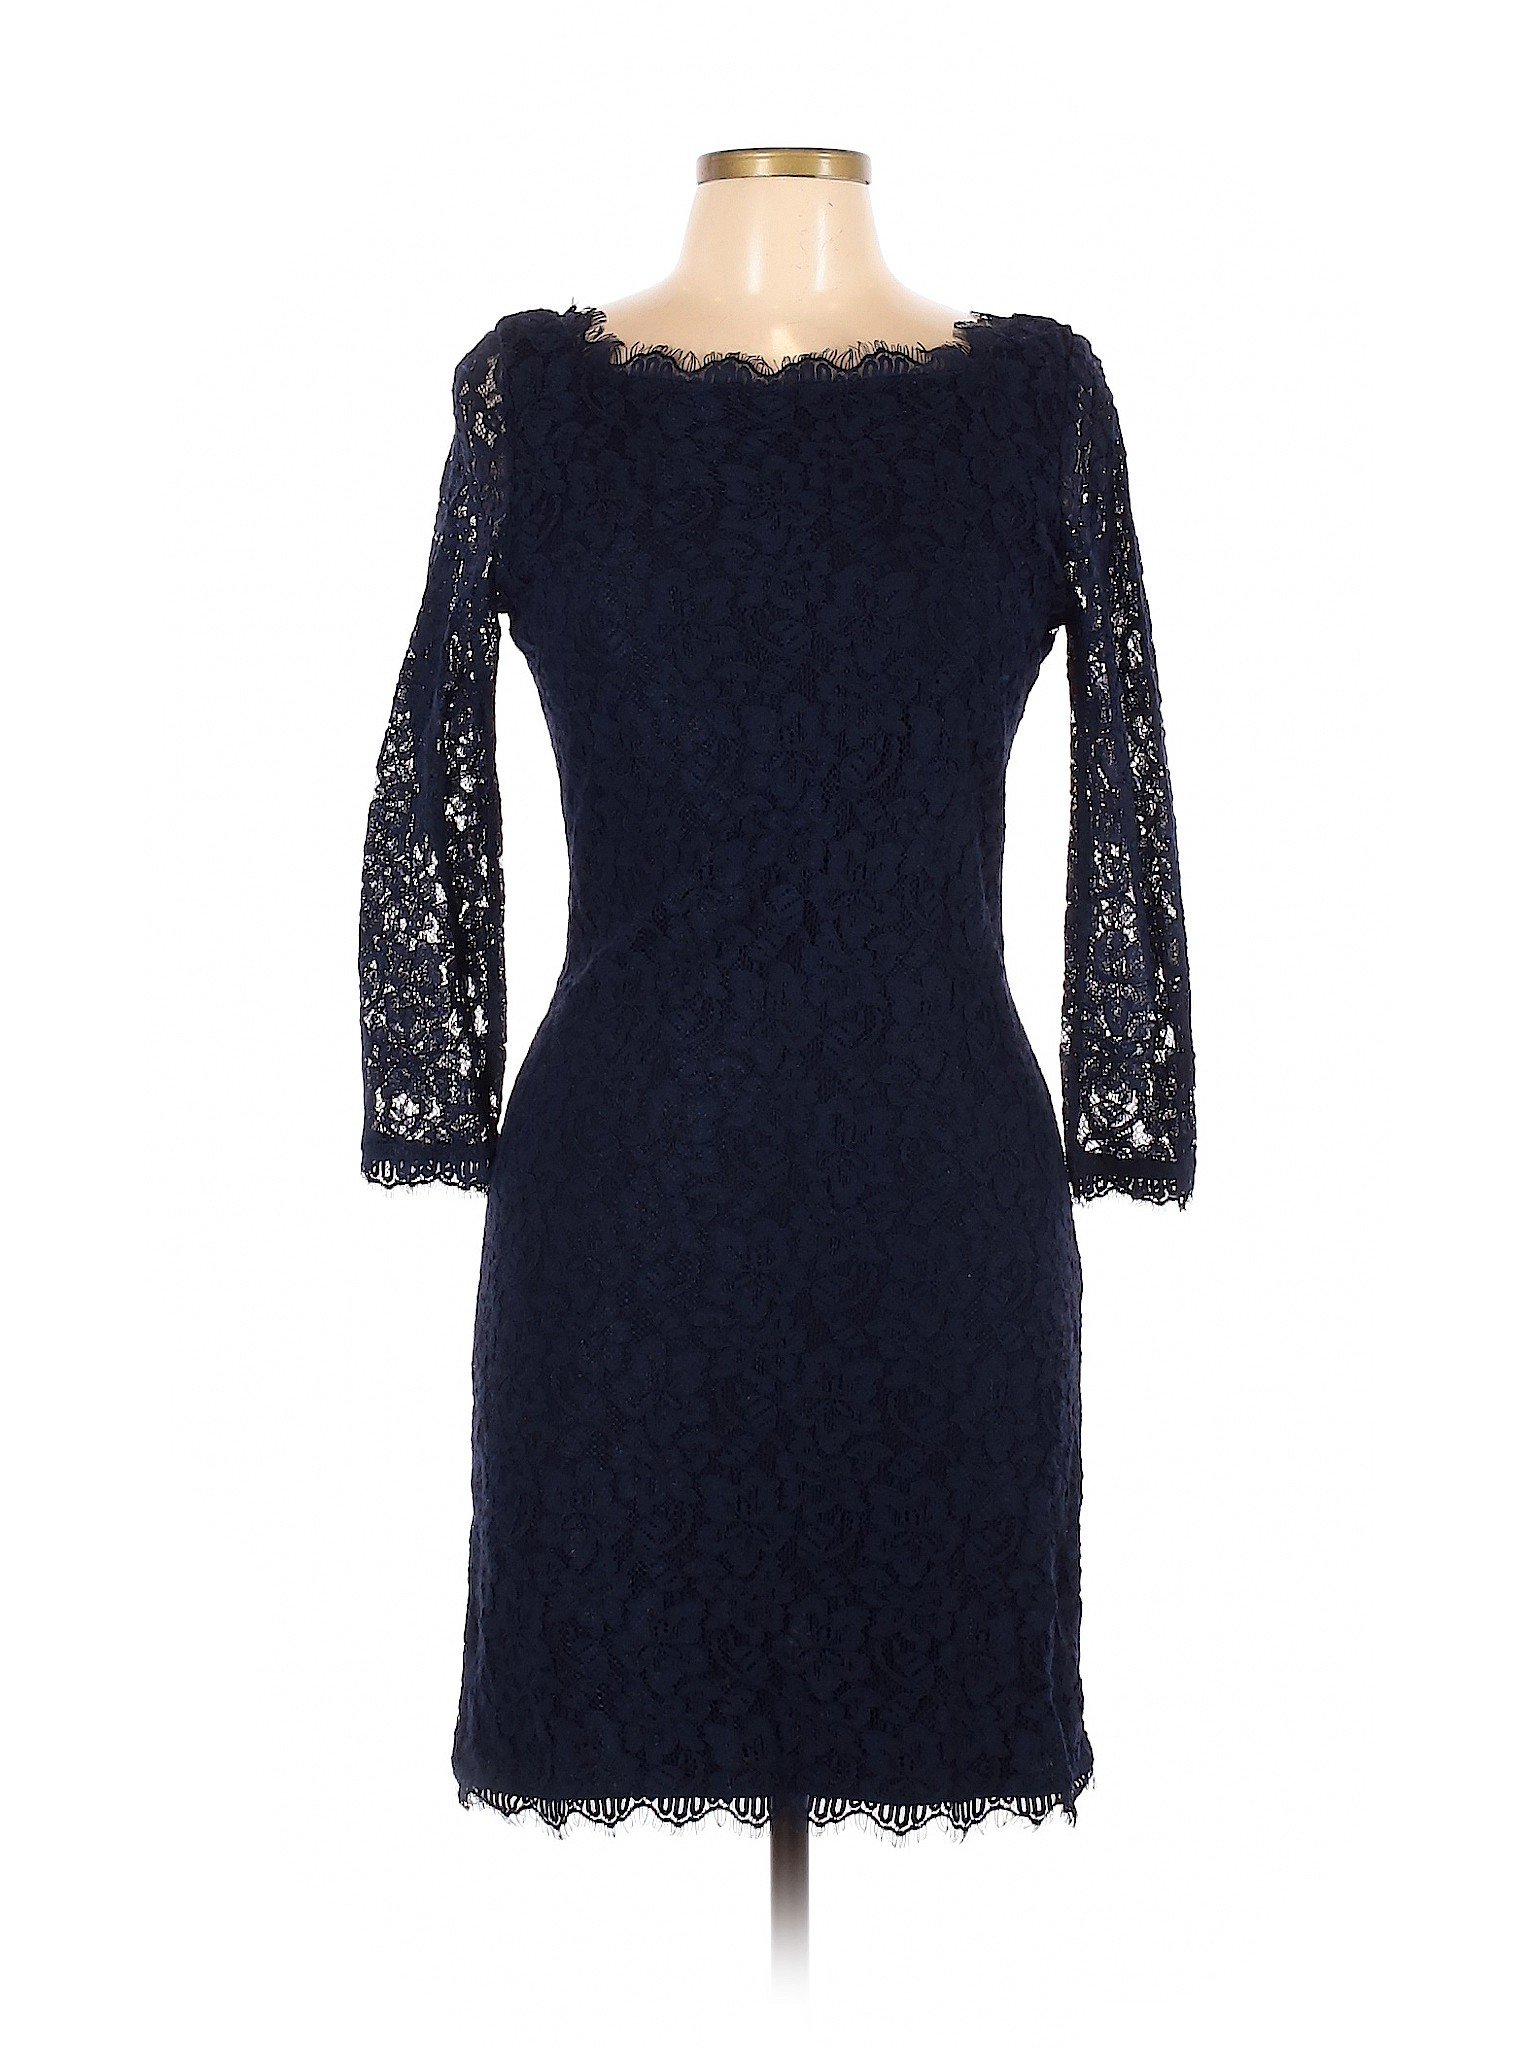 Diane von Furstenberg Women Blue Cocktail Dress 12 | eBay